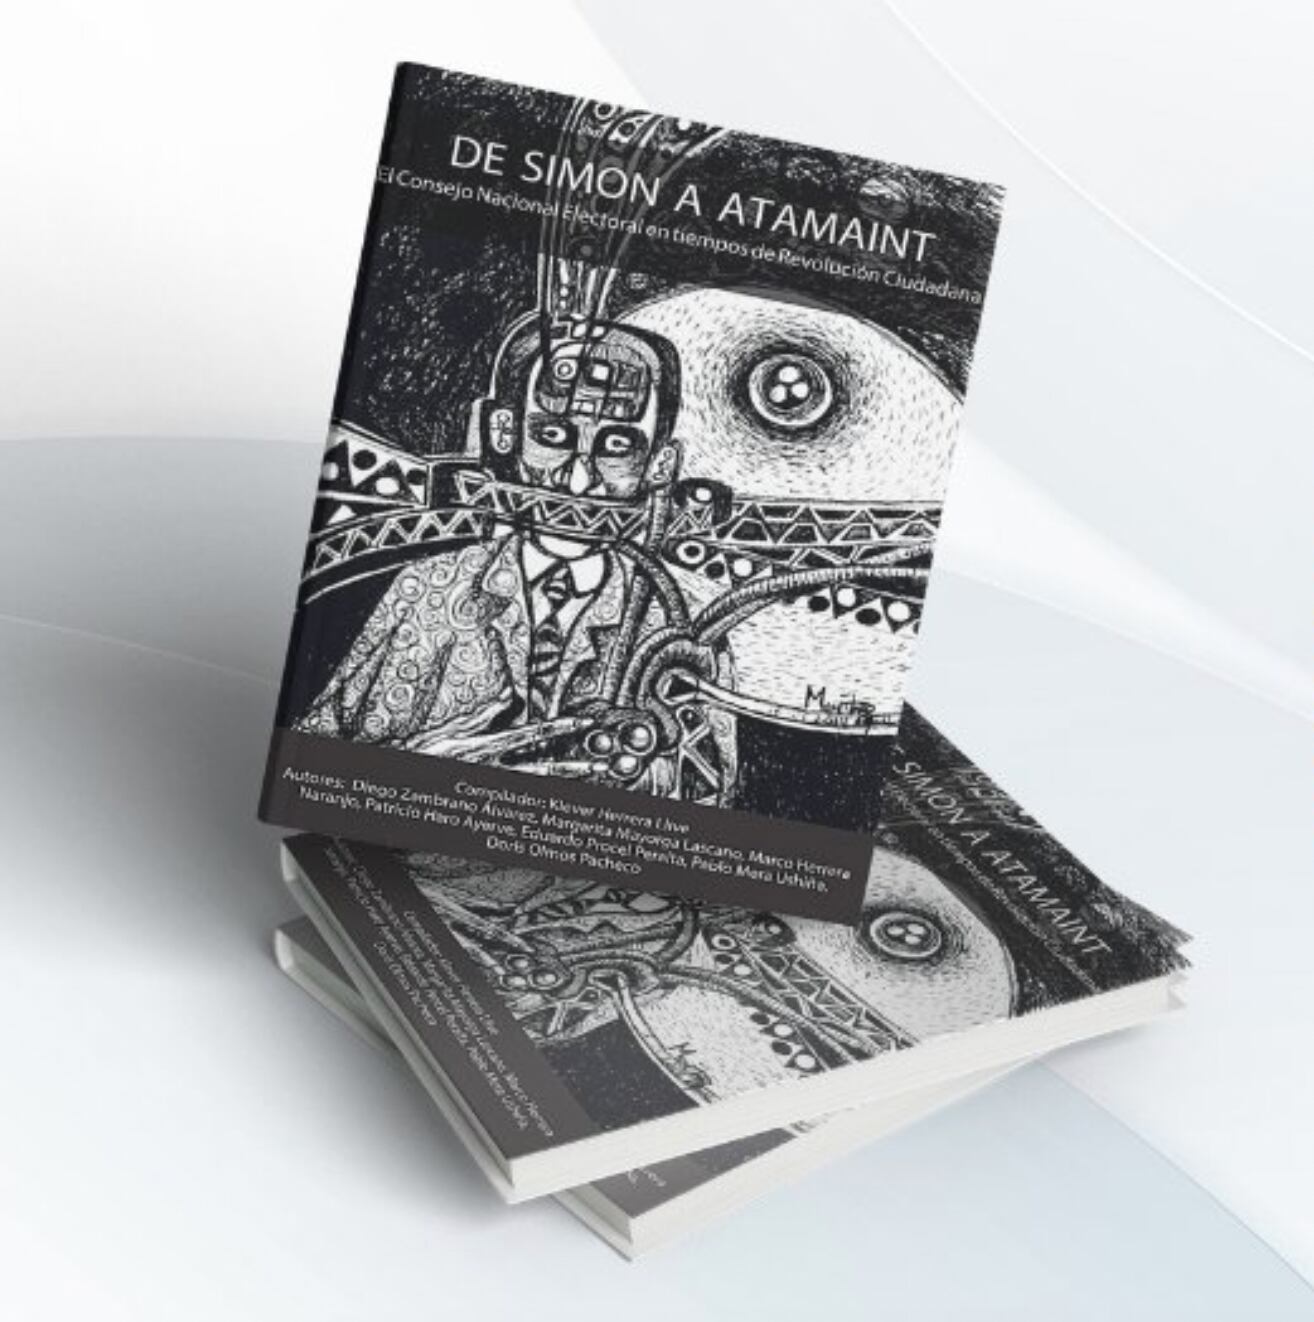 El libro titulado de “Simon a Atamaint” presenta a una investigación académica en el ámbito político sobre el Consejo Nacional Electoral. (IAEN)